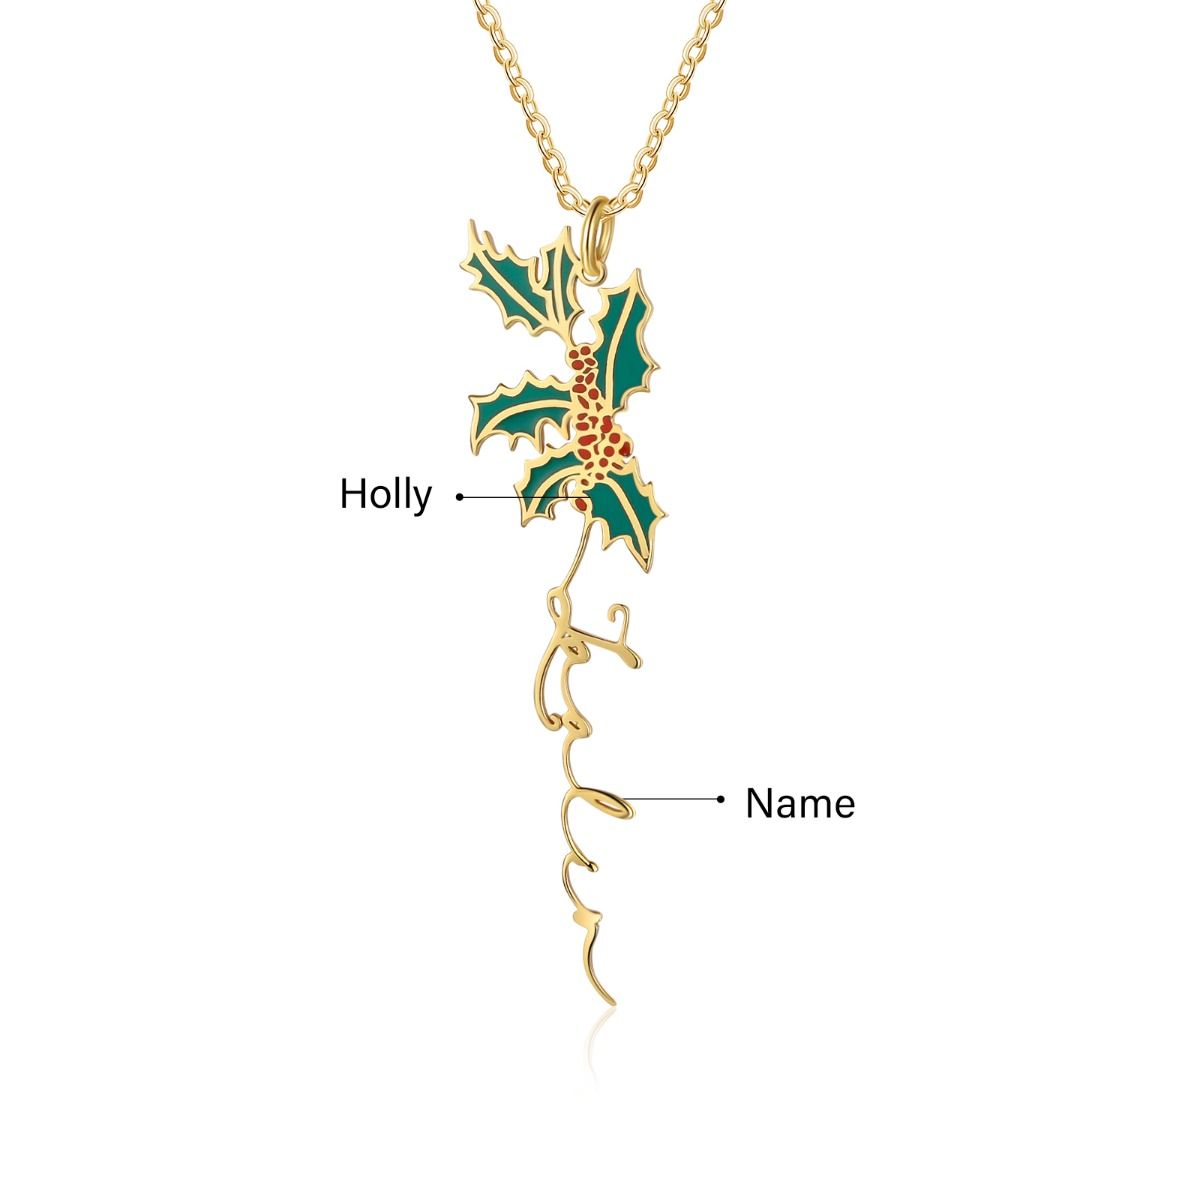 Customised Birthflower Name Necklace | Bespoke Name Necklace With Birthflower